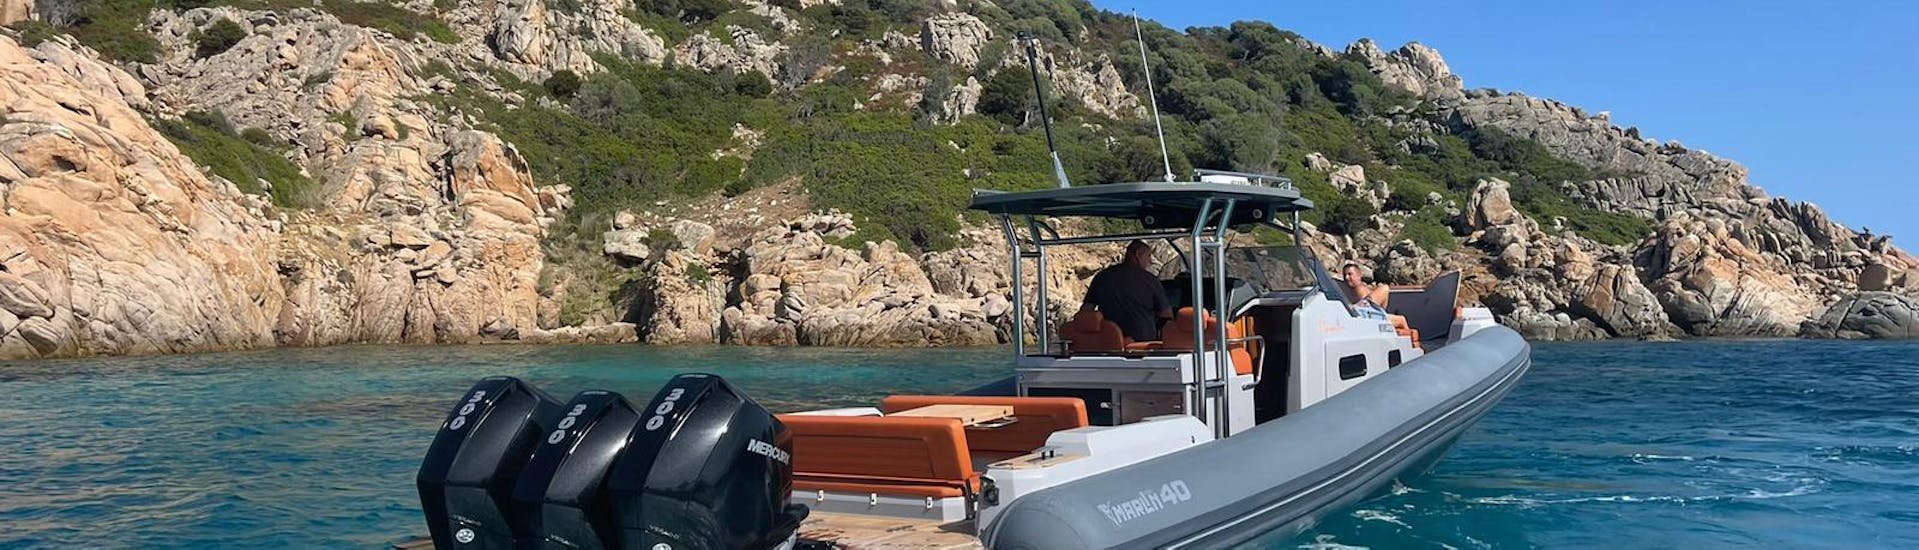 Lo splendido gommone è diretto all'isola di Tavolara durante una delle gite in barca di Controvento Charter Olbia.